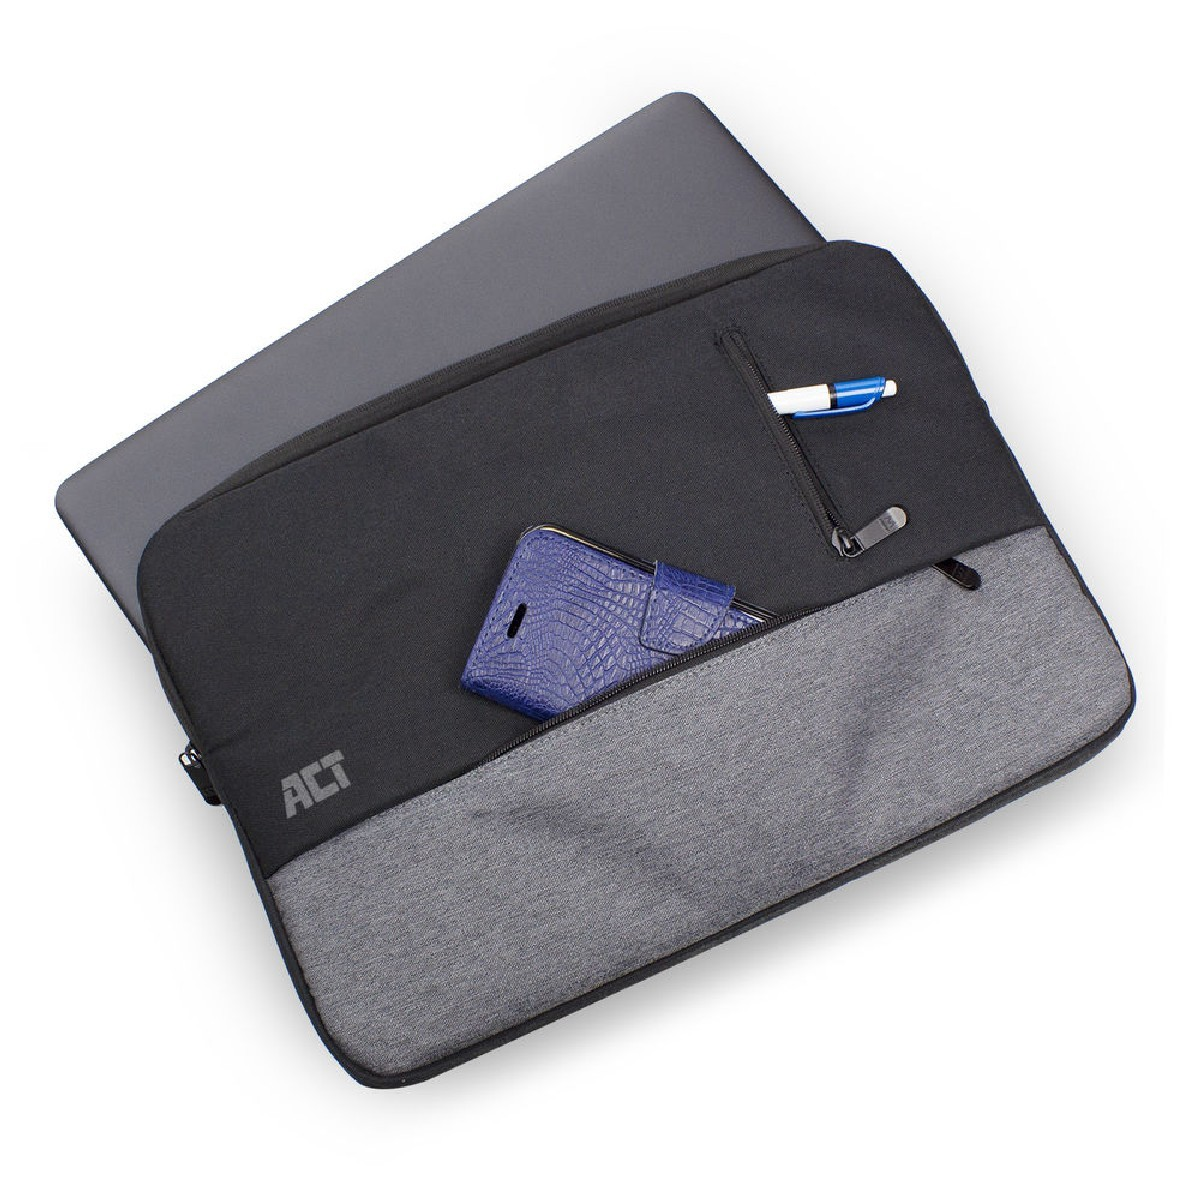 ACT Sleeve schwarz AC8545 Notebooktasche für Laptop-Tasche Polyester, universal